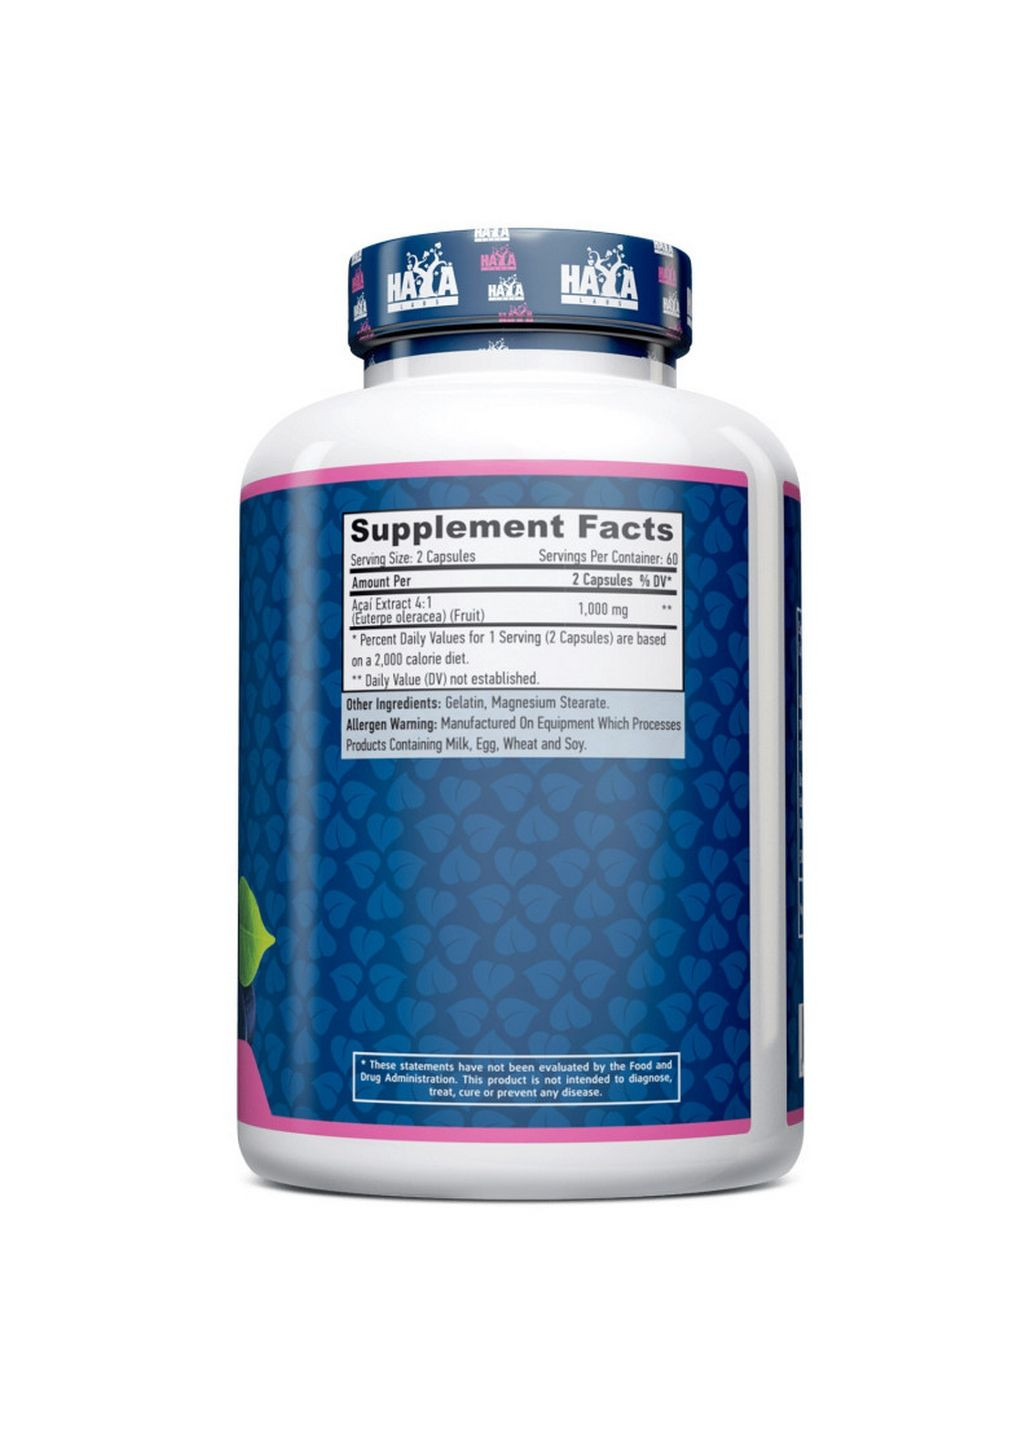 Натуральная добавка Acai 1000 mg, 120 капсул Haya Labs (293421385)